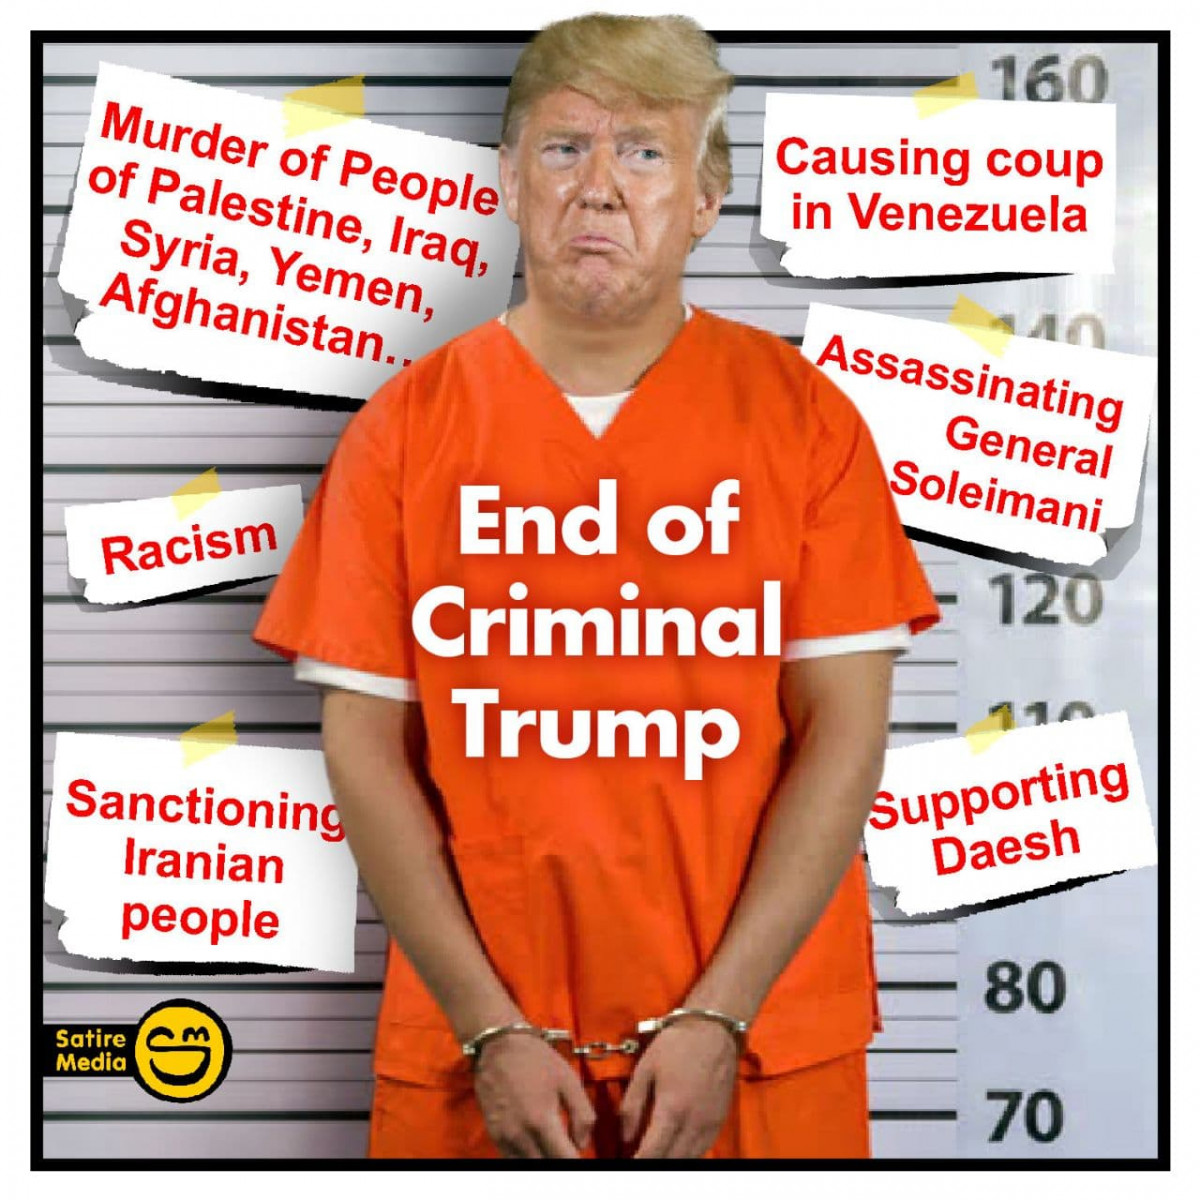 End of criminal Trump